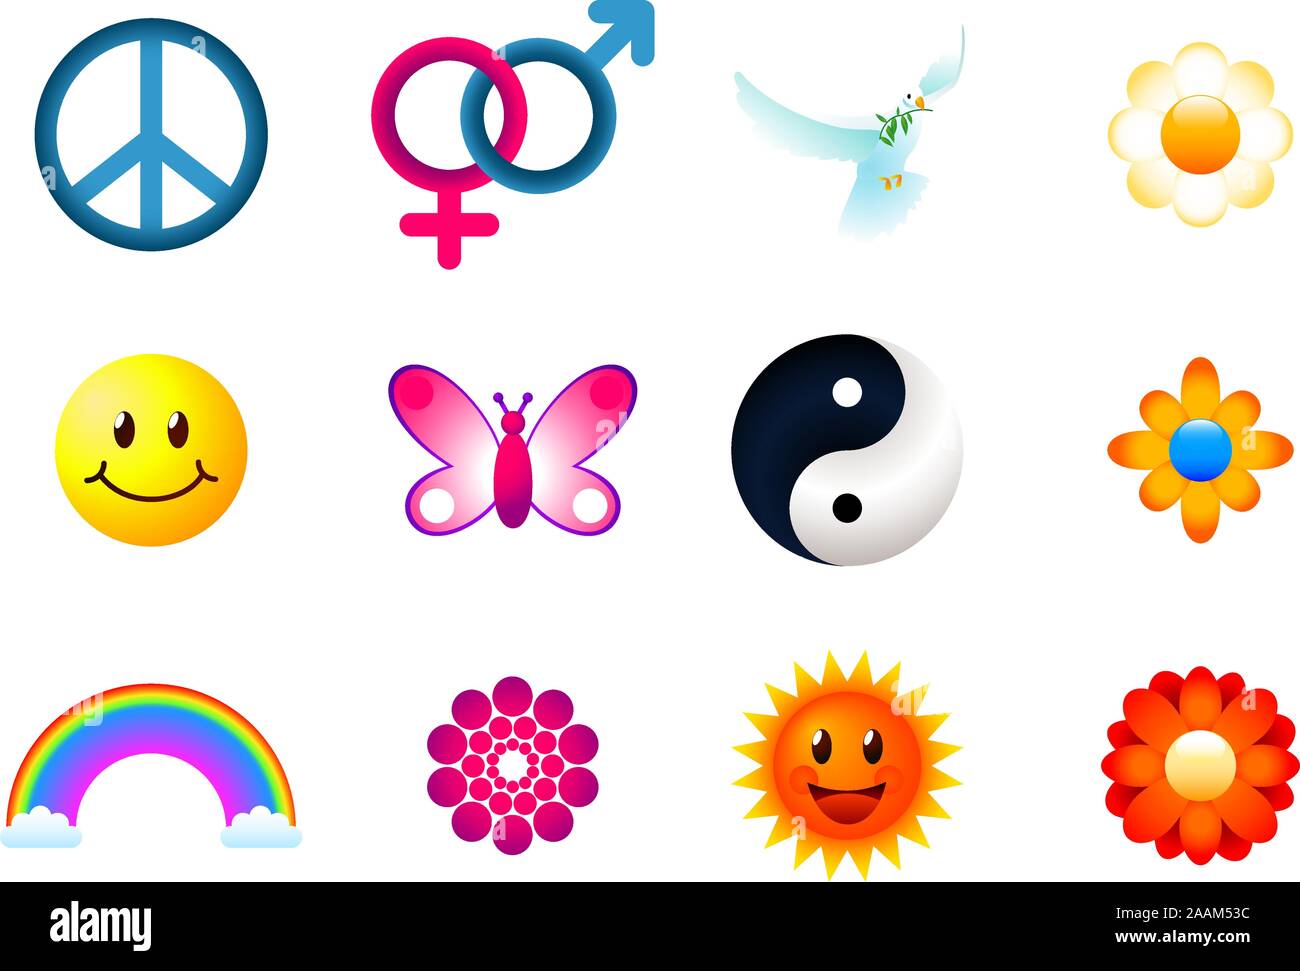 Icônes de la paix, ensemble avec l'homme, femme, fleur, Smiley, papillon, Yin Yang, arc-en-ciel, soleil. Vector illustration cartoon. Illustration de Vecteur